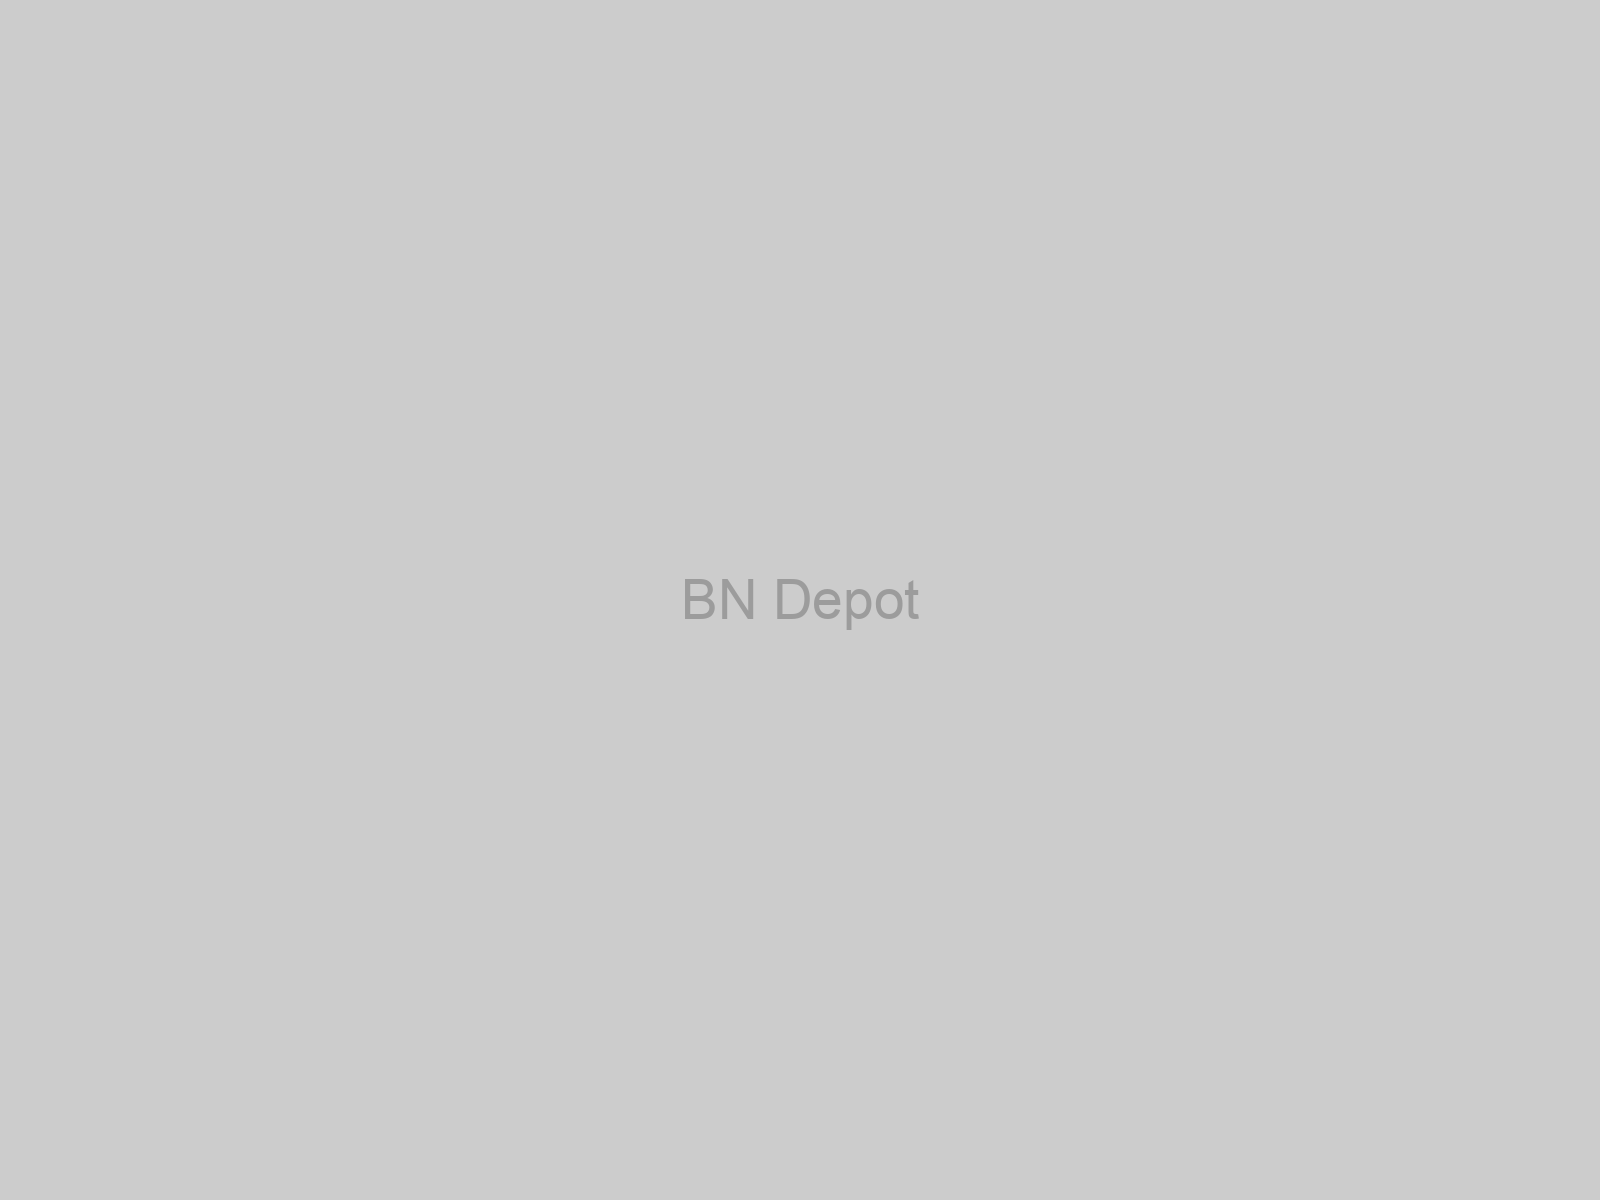 BN Depot